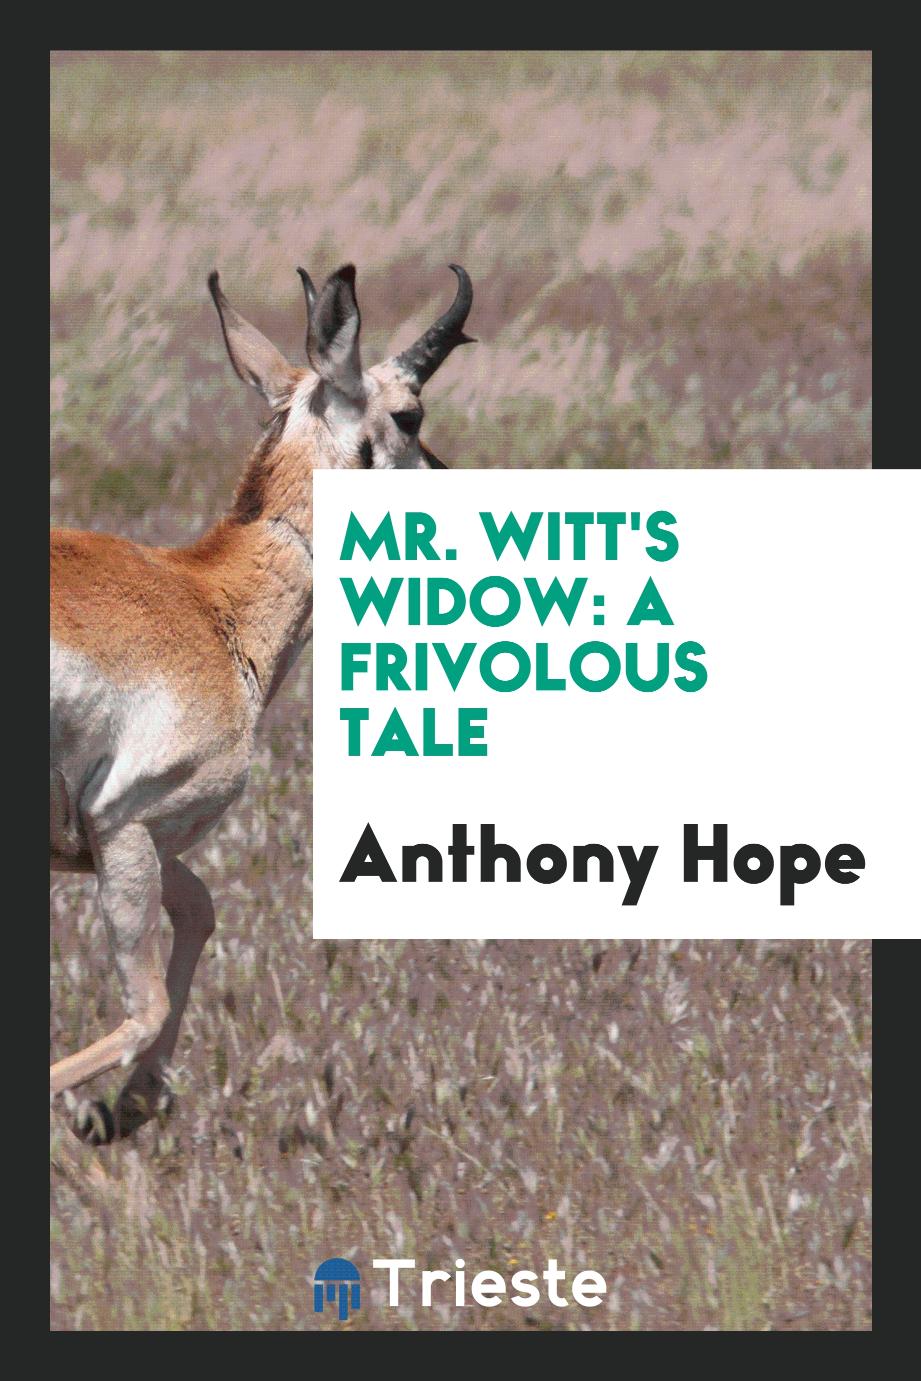 Mr. Witt's widow: a frivolous tale